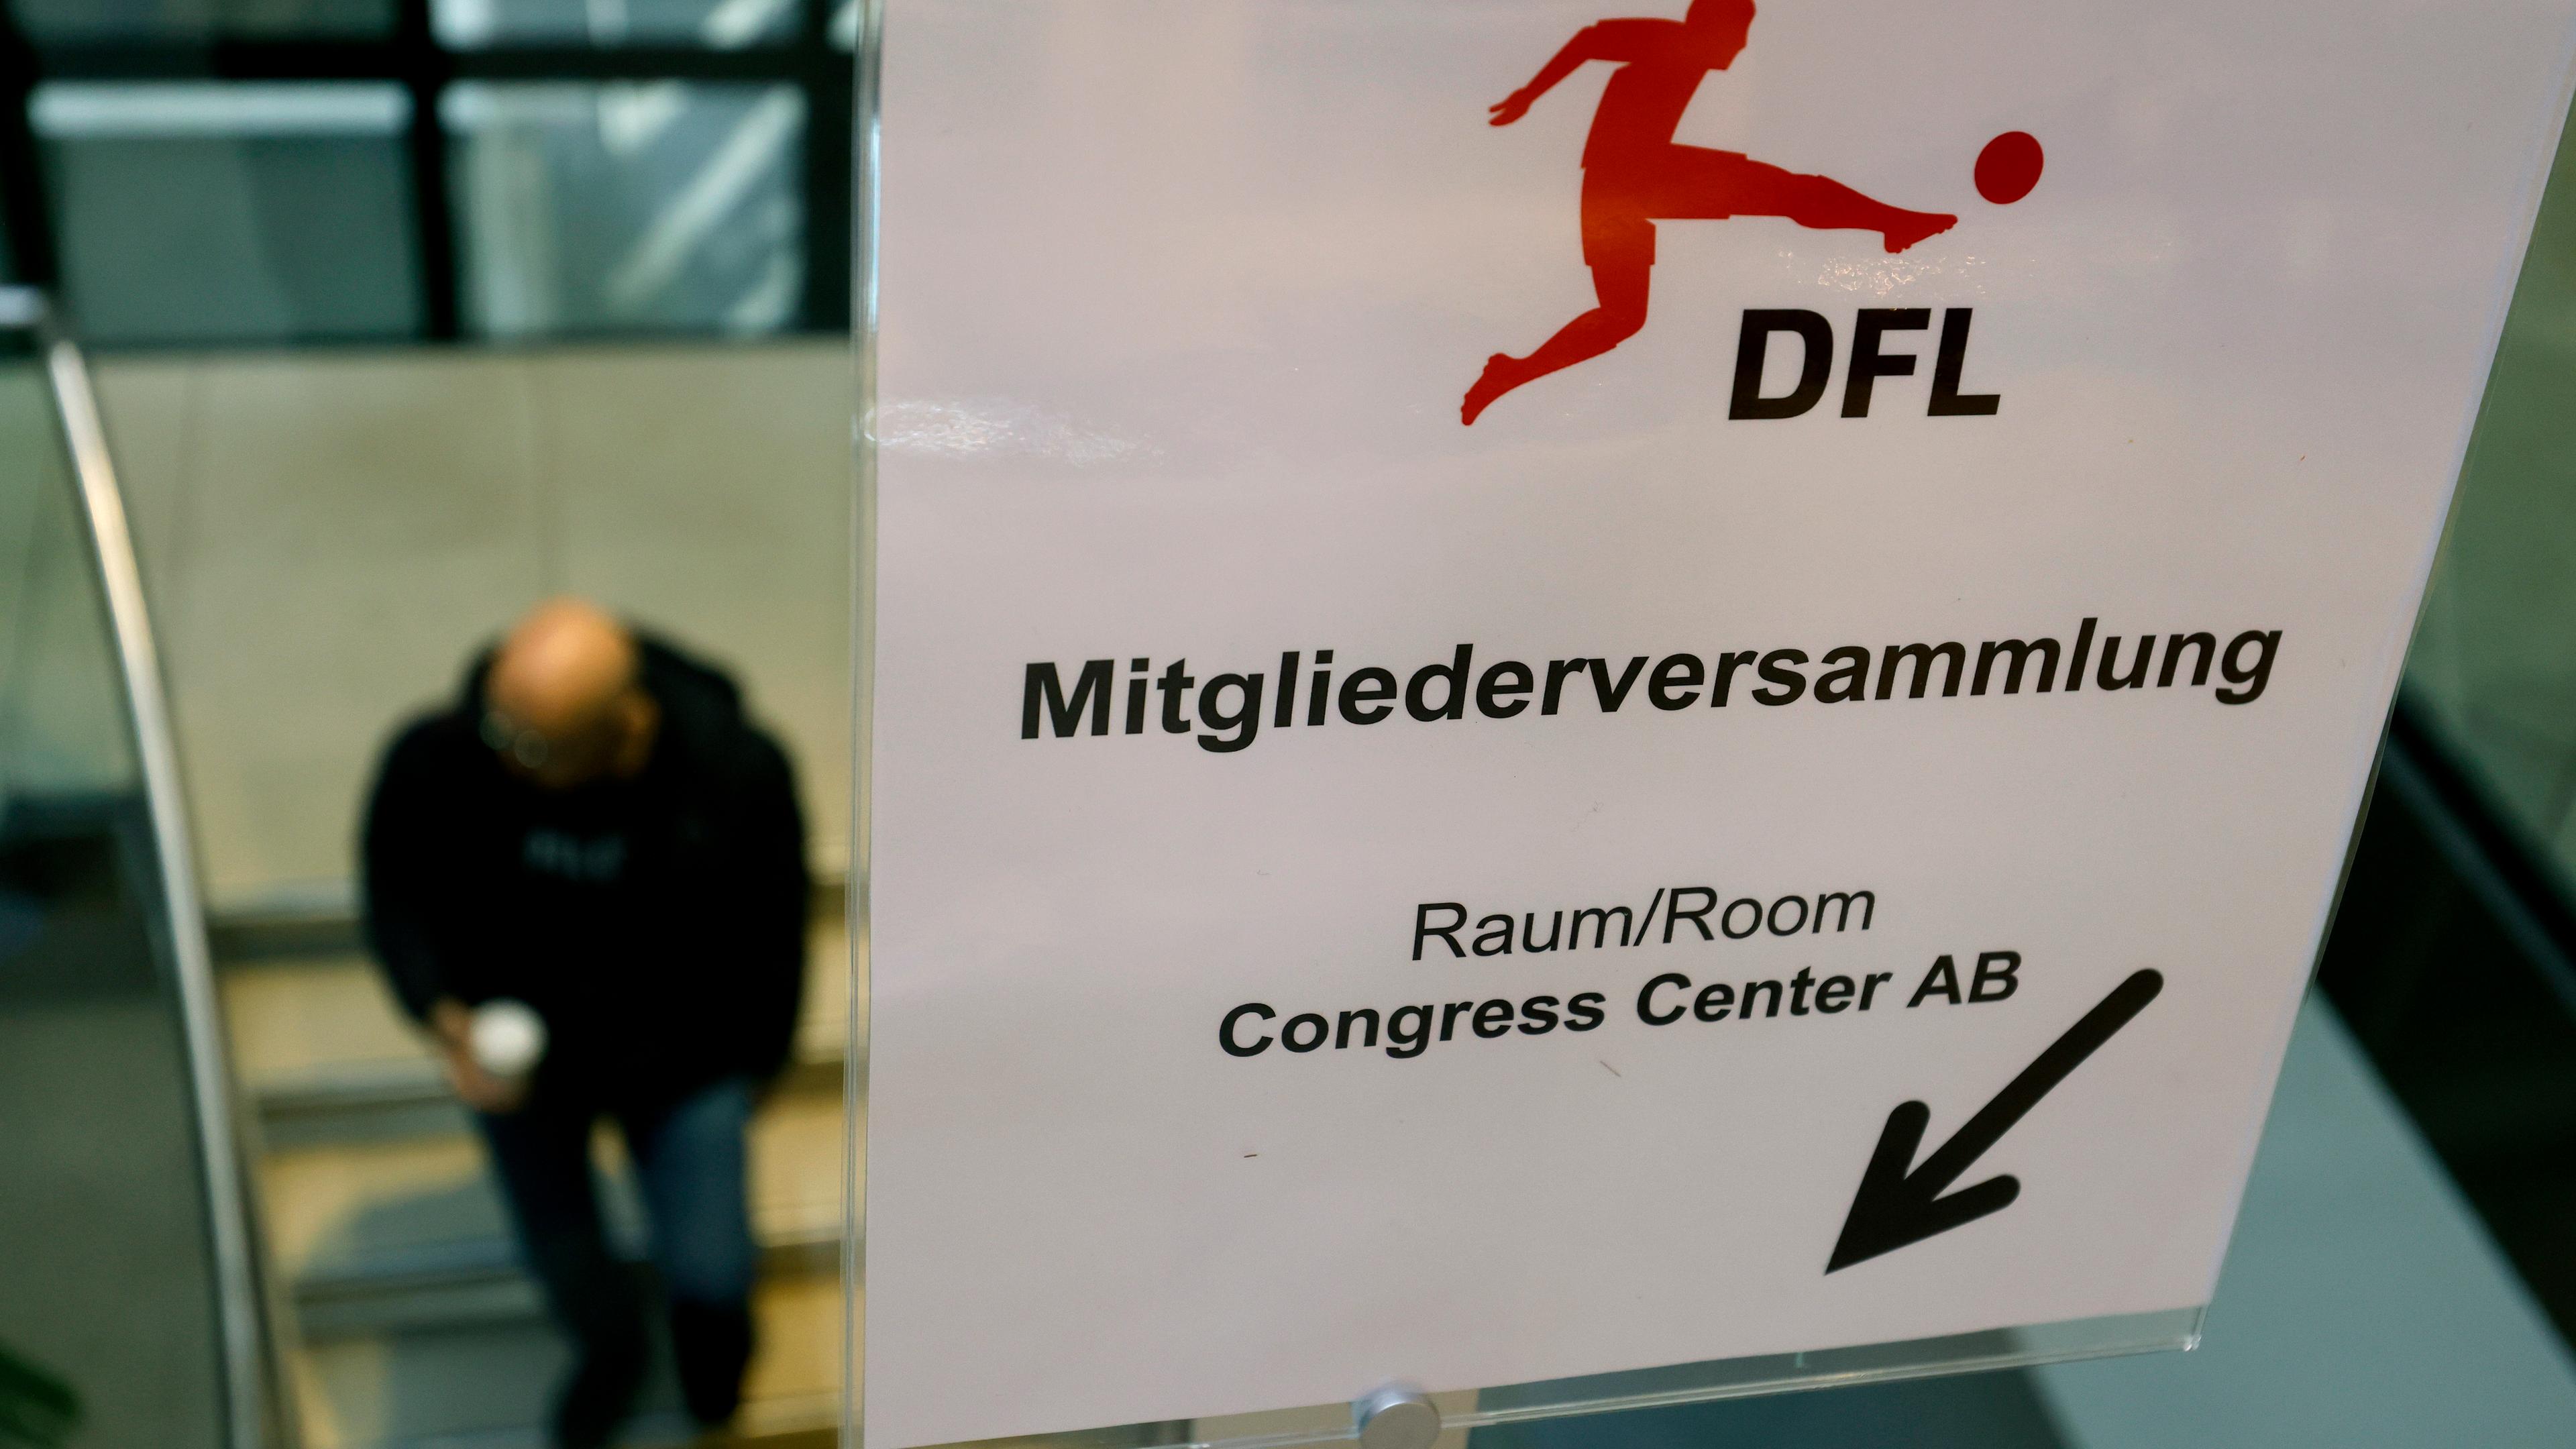 DFL Mitgliederversammlung